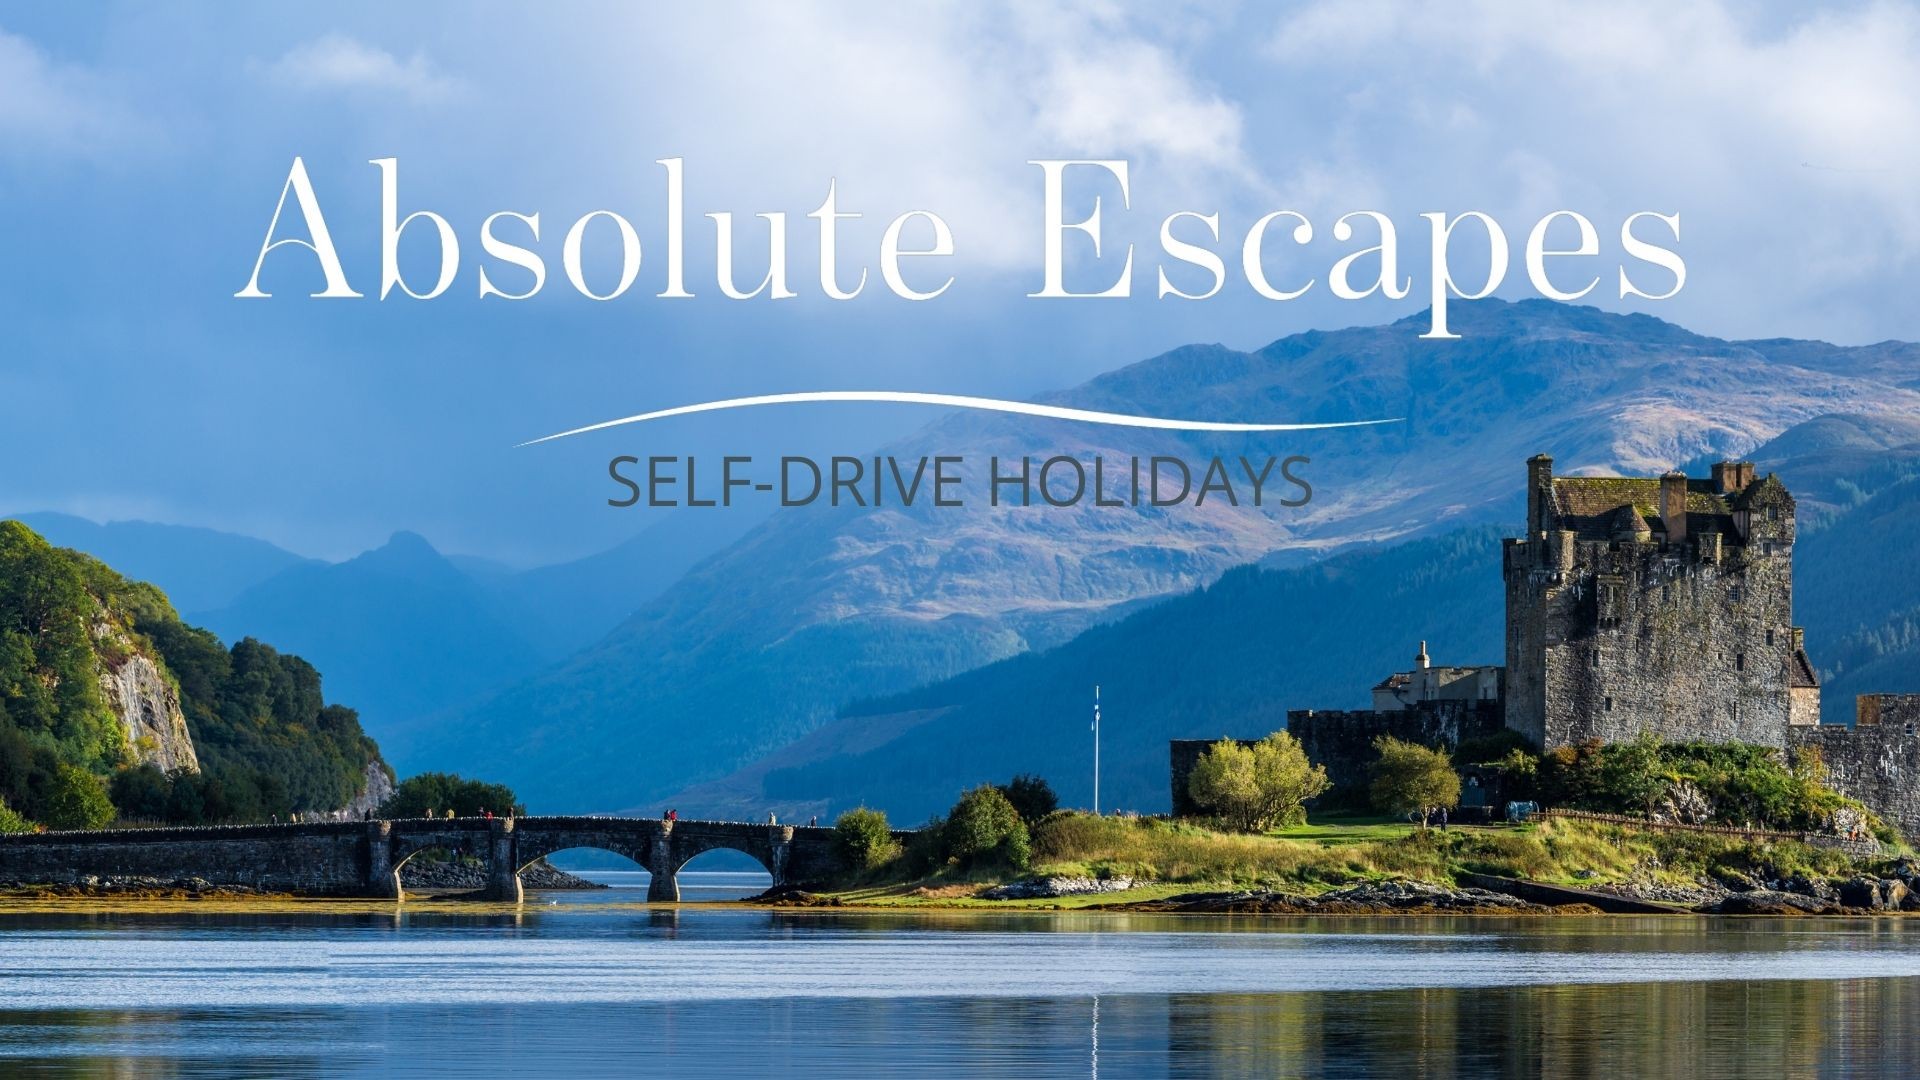 scotland tourism tagline